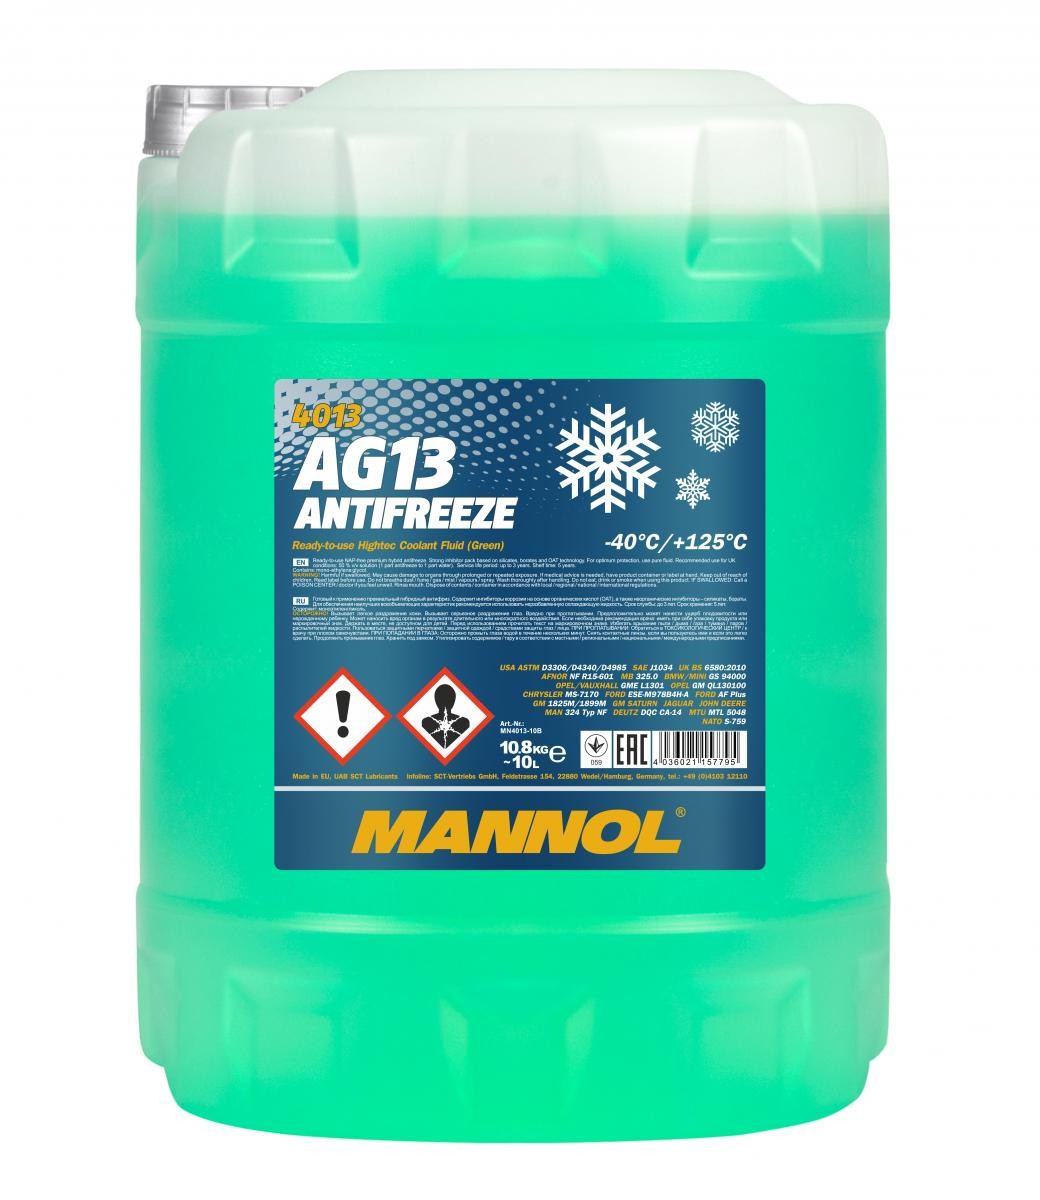 Mannol 4013 Kühlerfrostschutz Antifreeze AG13 Hightec -40 Fertigmischung 10 Liter